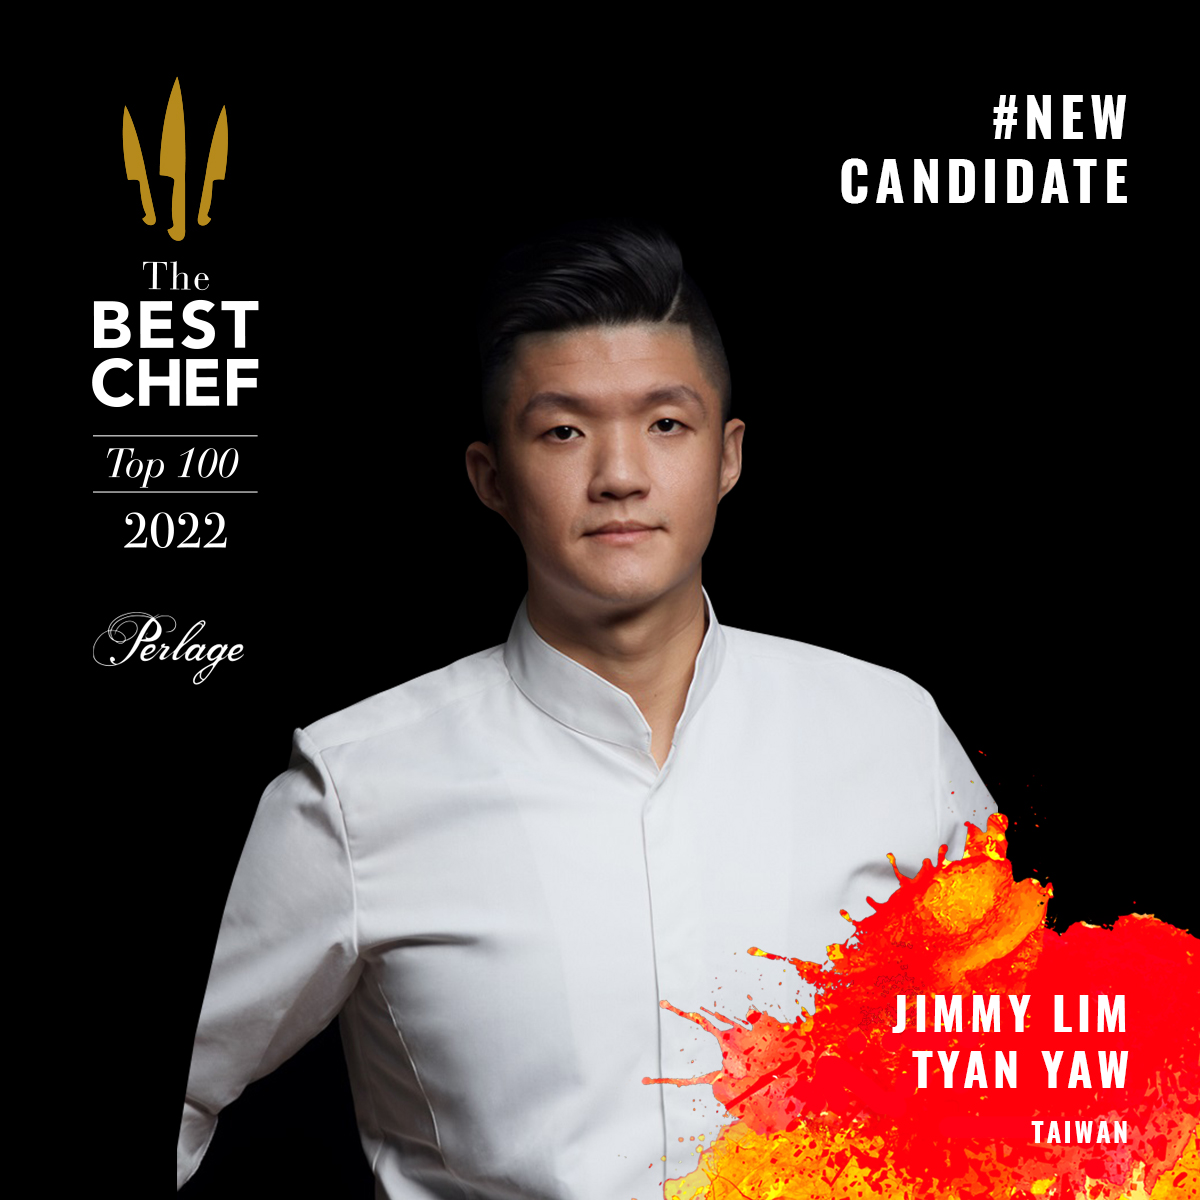 Jimmy Lim Tyan Yaw - New Candidates 2022